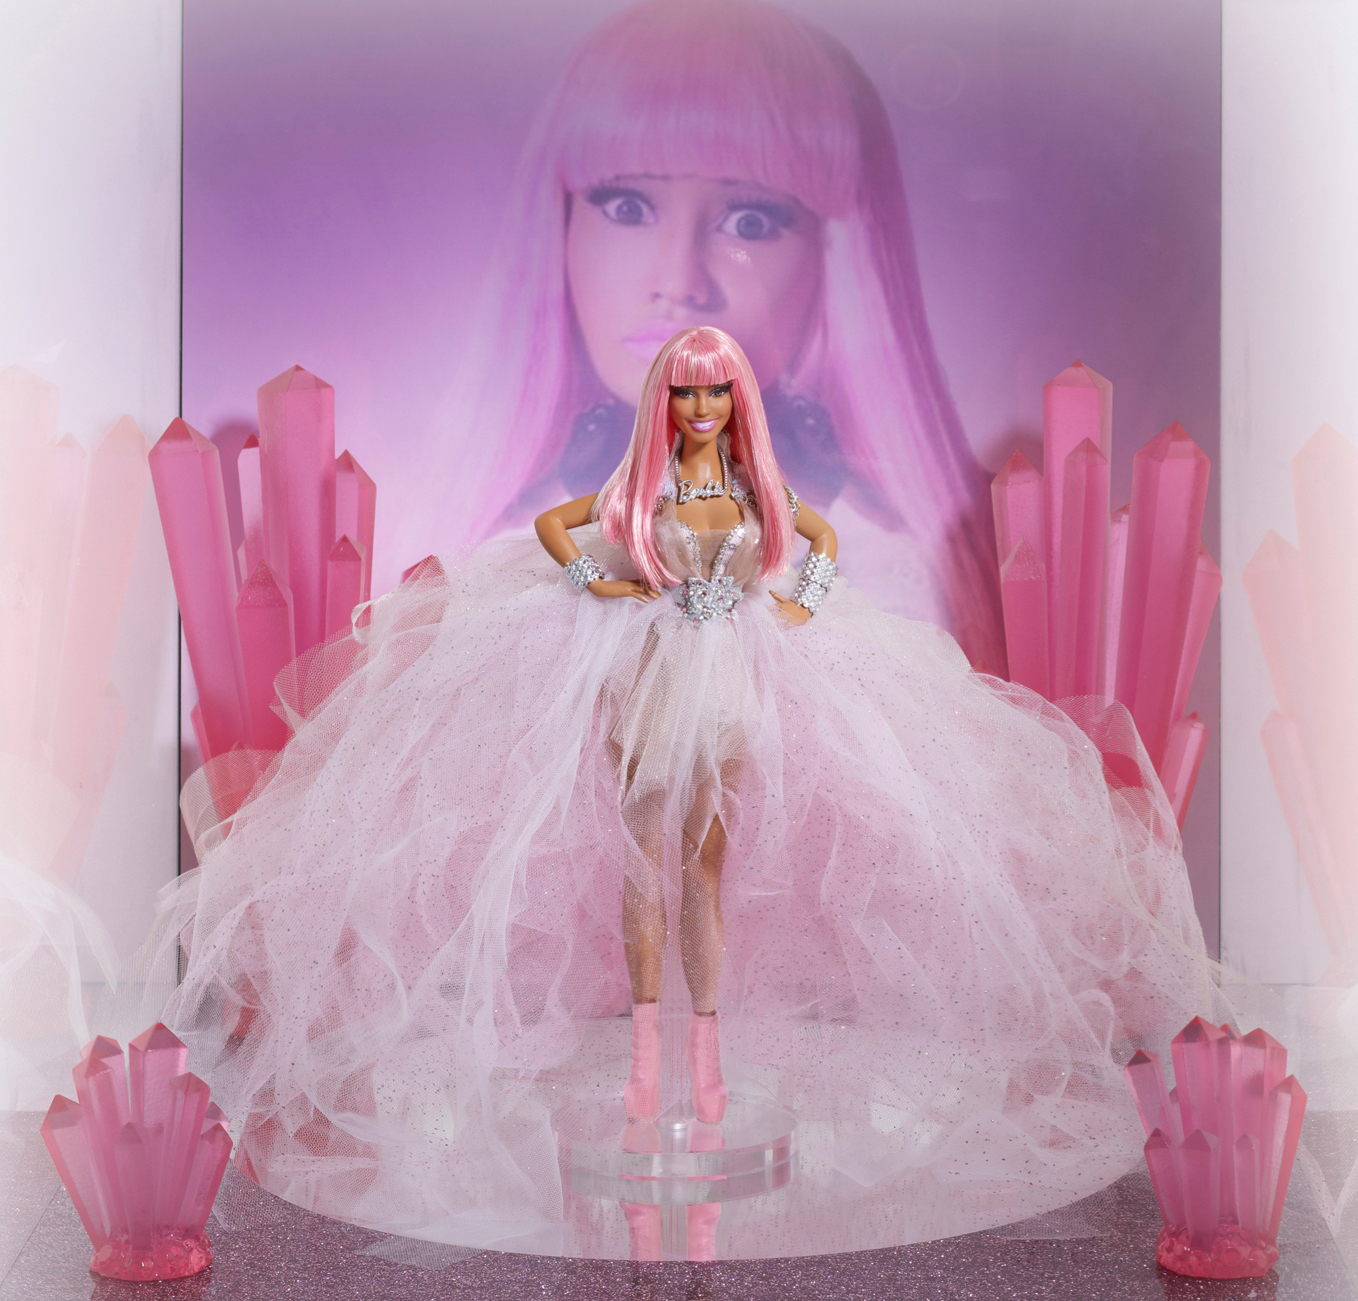 The Nicki Minaj Doll, released in 2011.